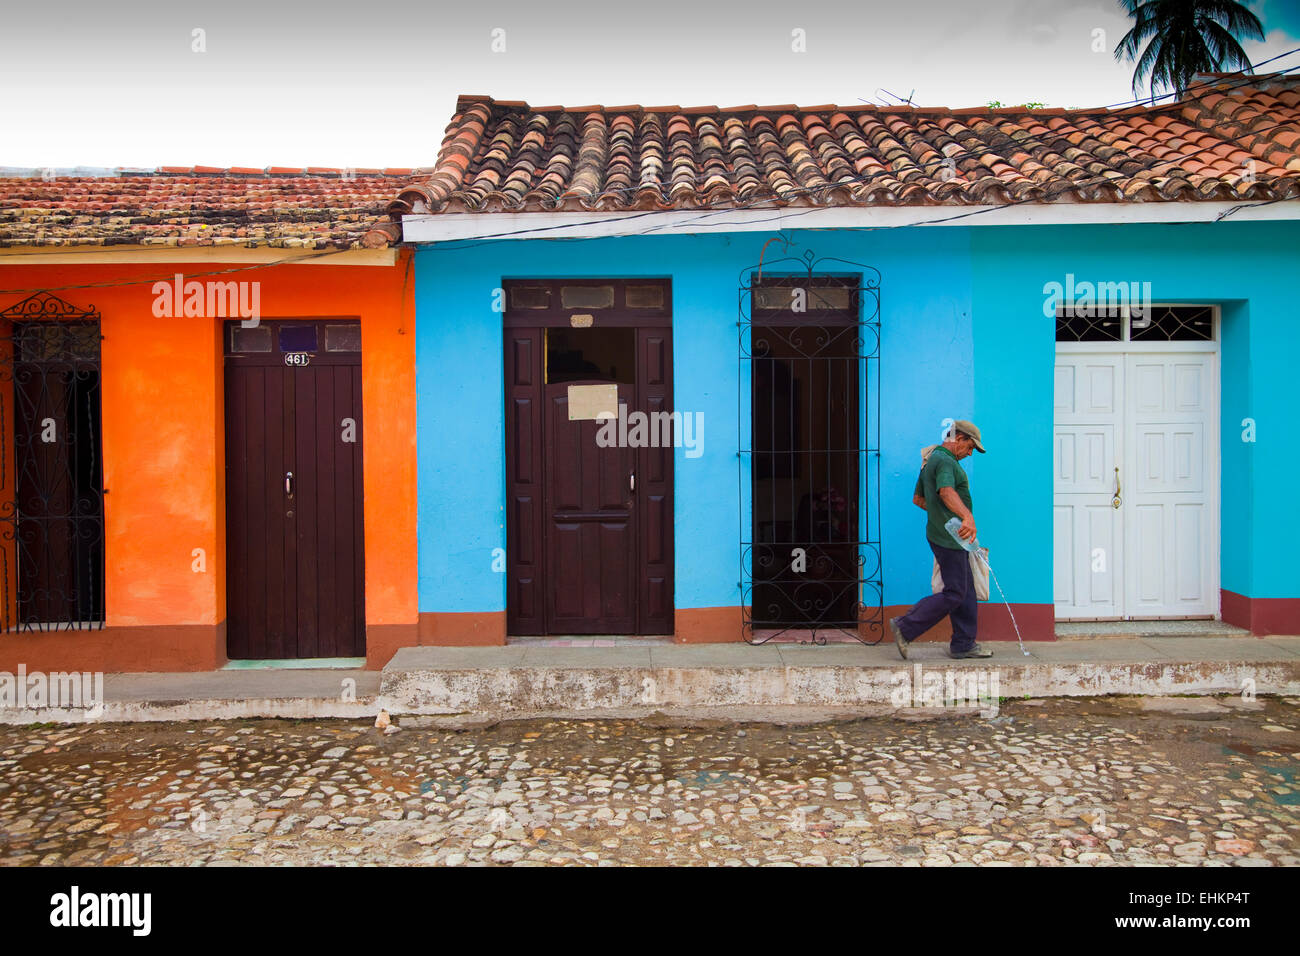 La vida en la calle, en Trinidad, Cuba Foto de stock